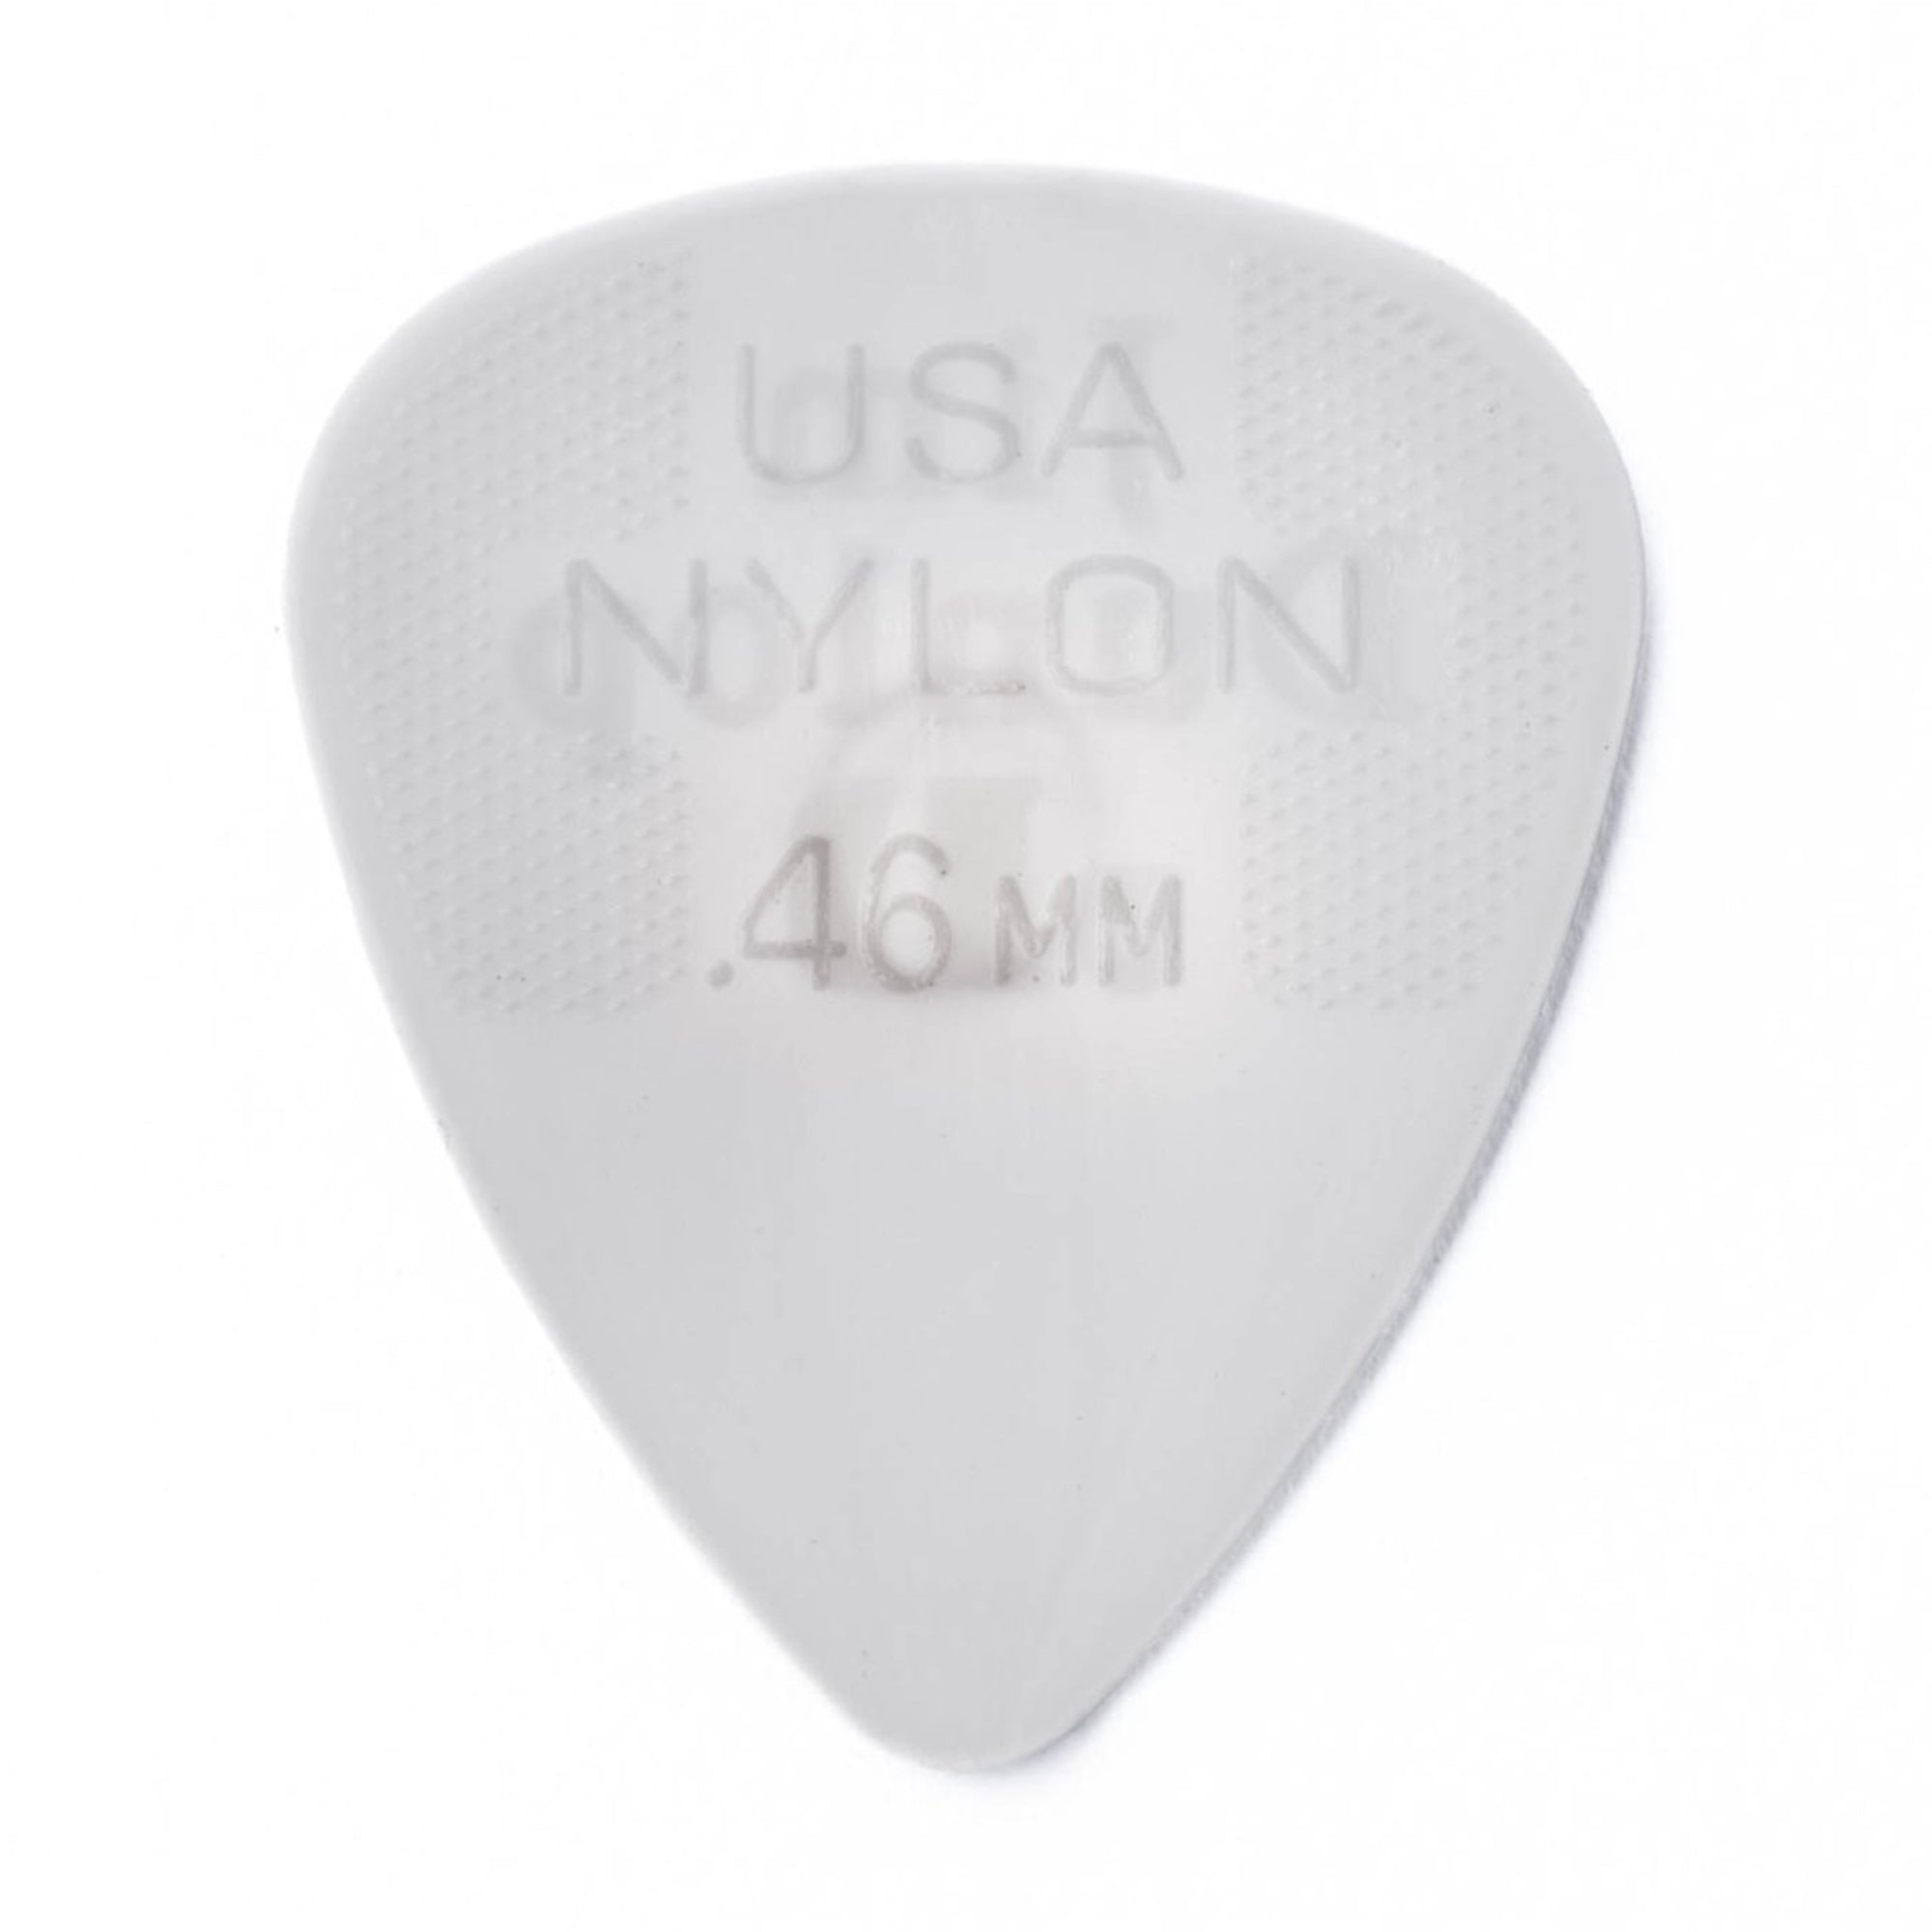 DUNLOP 44P46 .46" Nylon Standard Guitar Pick